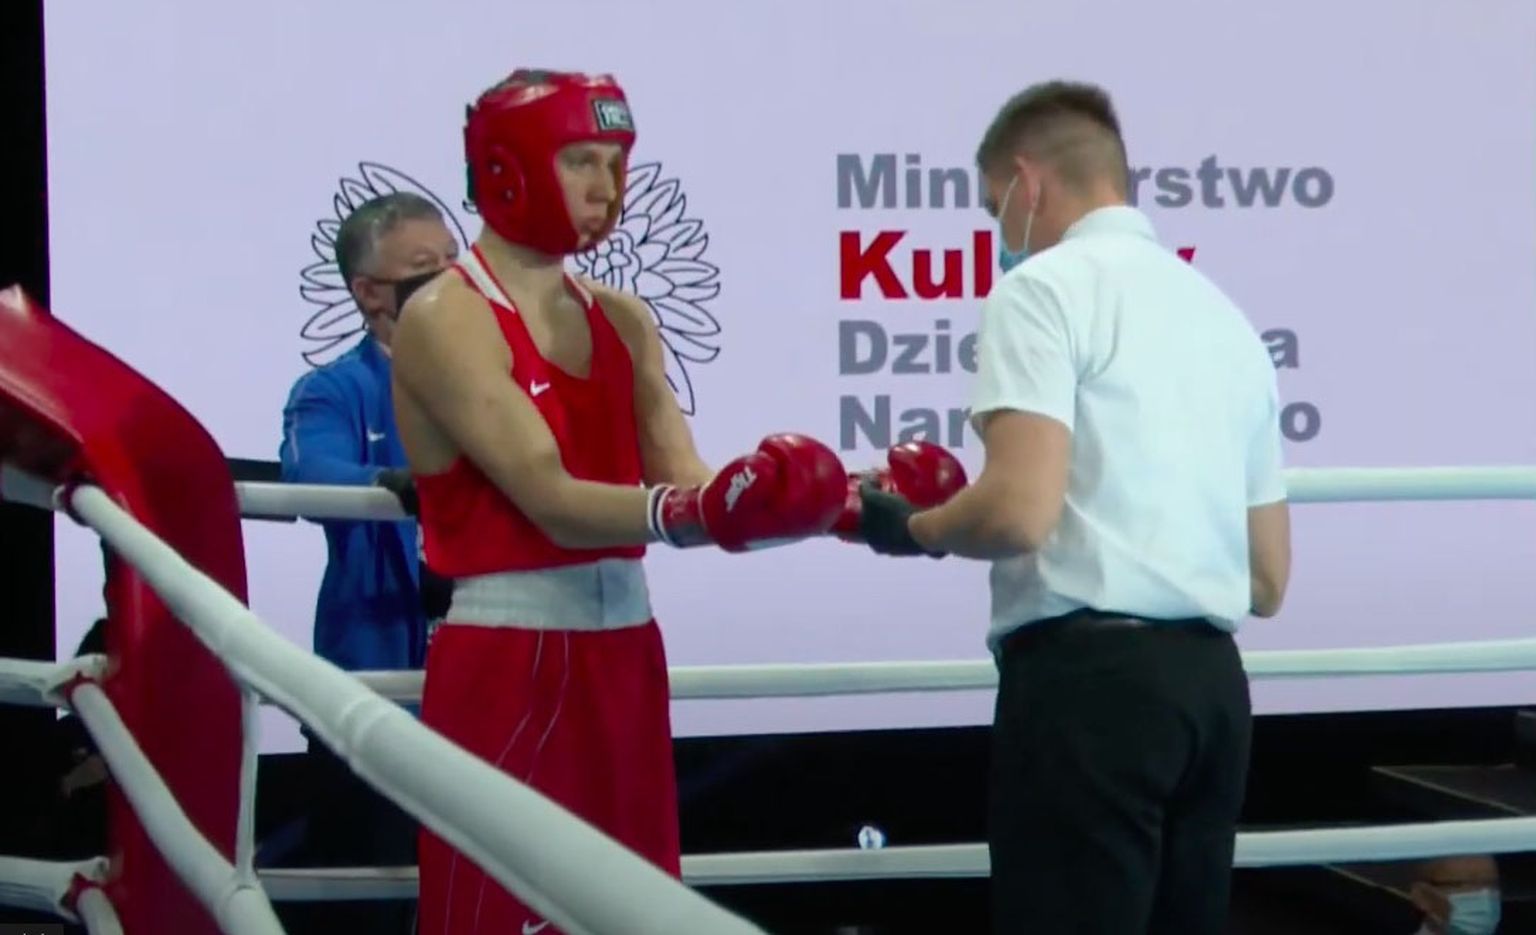 Нарвский боксер Антон Виноградов перед своим вторым боем на ринге молодежного чемпионата мира в польском Кельце.